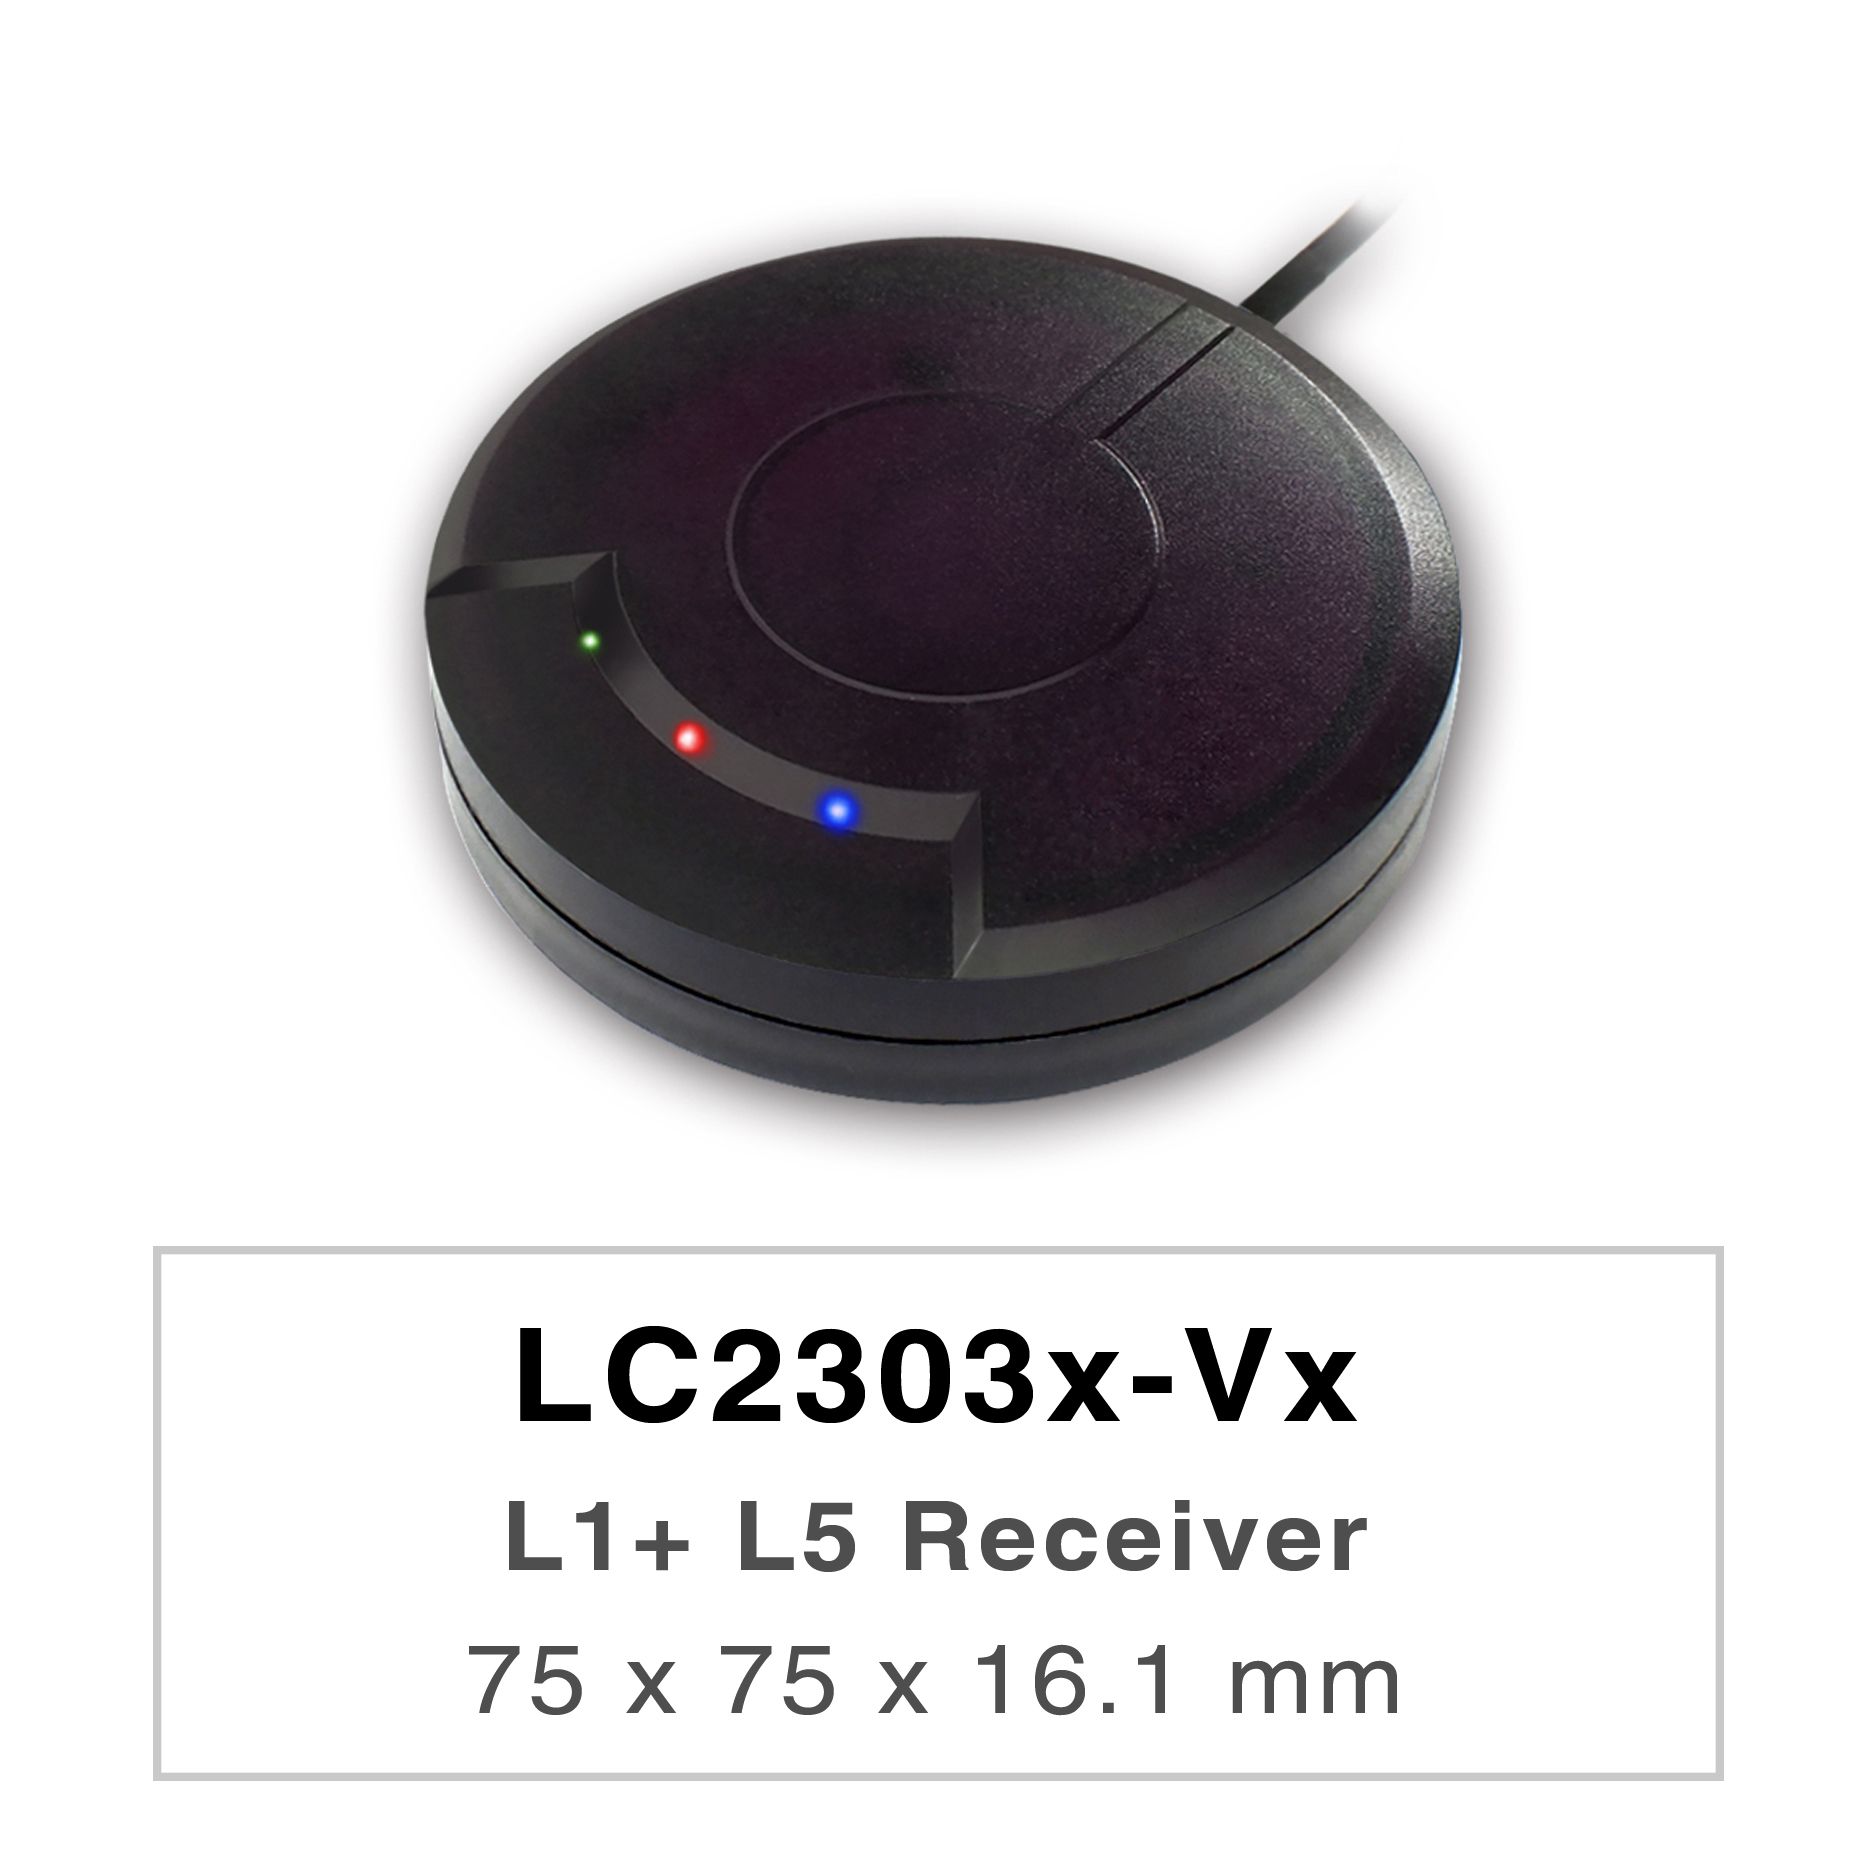 LC2303x-Vxシリーズの製品は、高性能なデュアルバンドGNSSレシーバー（GNSSマウスとも呼ばれる）で、全世界の民間航法システム（GPS、GLONASS、BDS、GALILEO、QZSS、IRNSS）を追跡することができます。